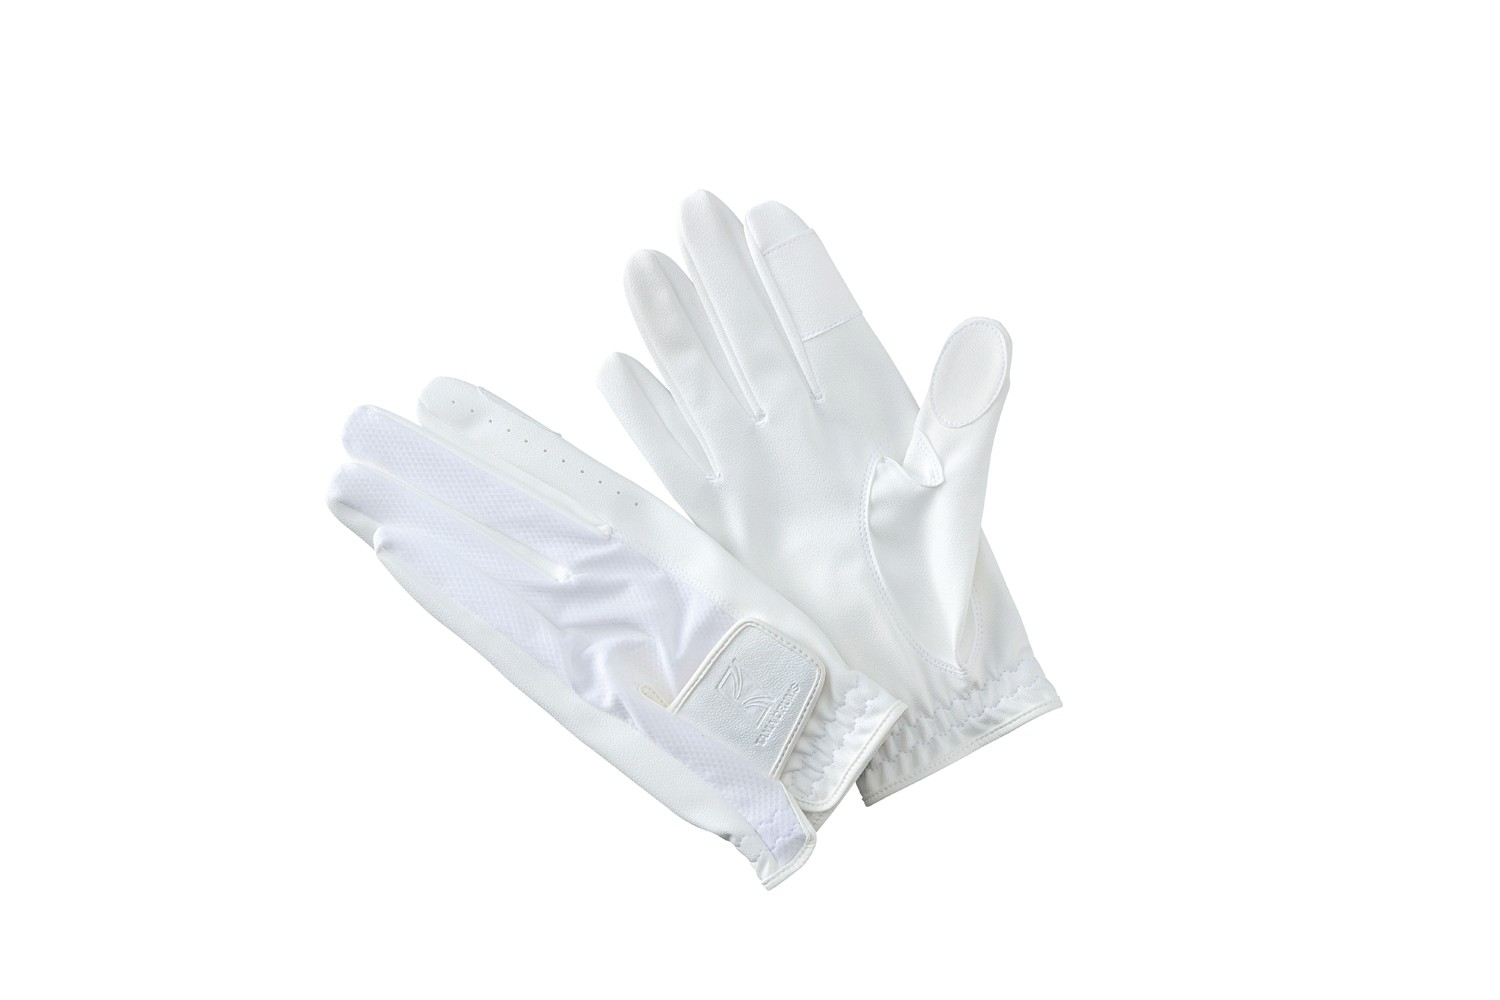 Tama TDG10WHM Drum Gloves White - Medium